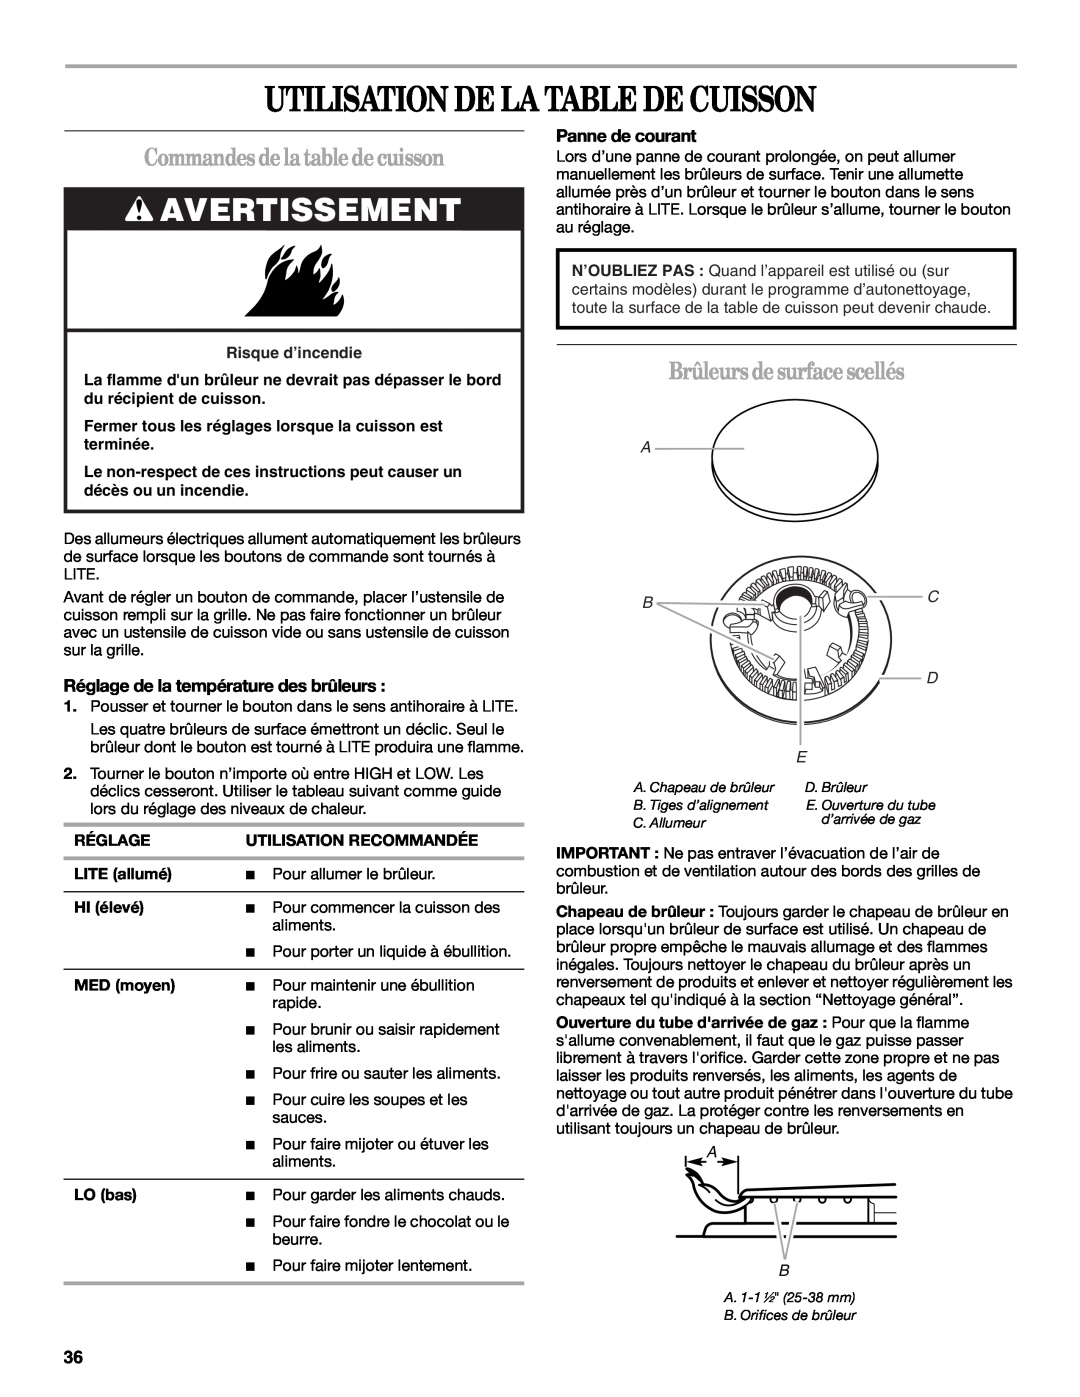 Whirlpool SF315PEPB1 manual Utilisation De La Table De Cuisson, Commandesdelatabledecuisson, Brûleurs desurfacescellés 